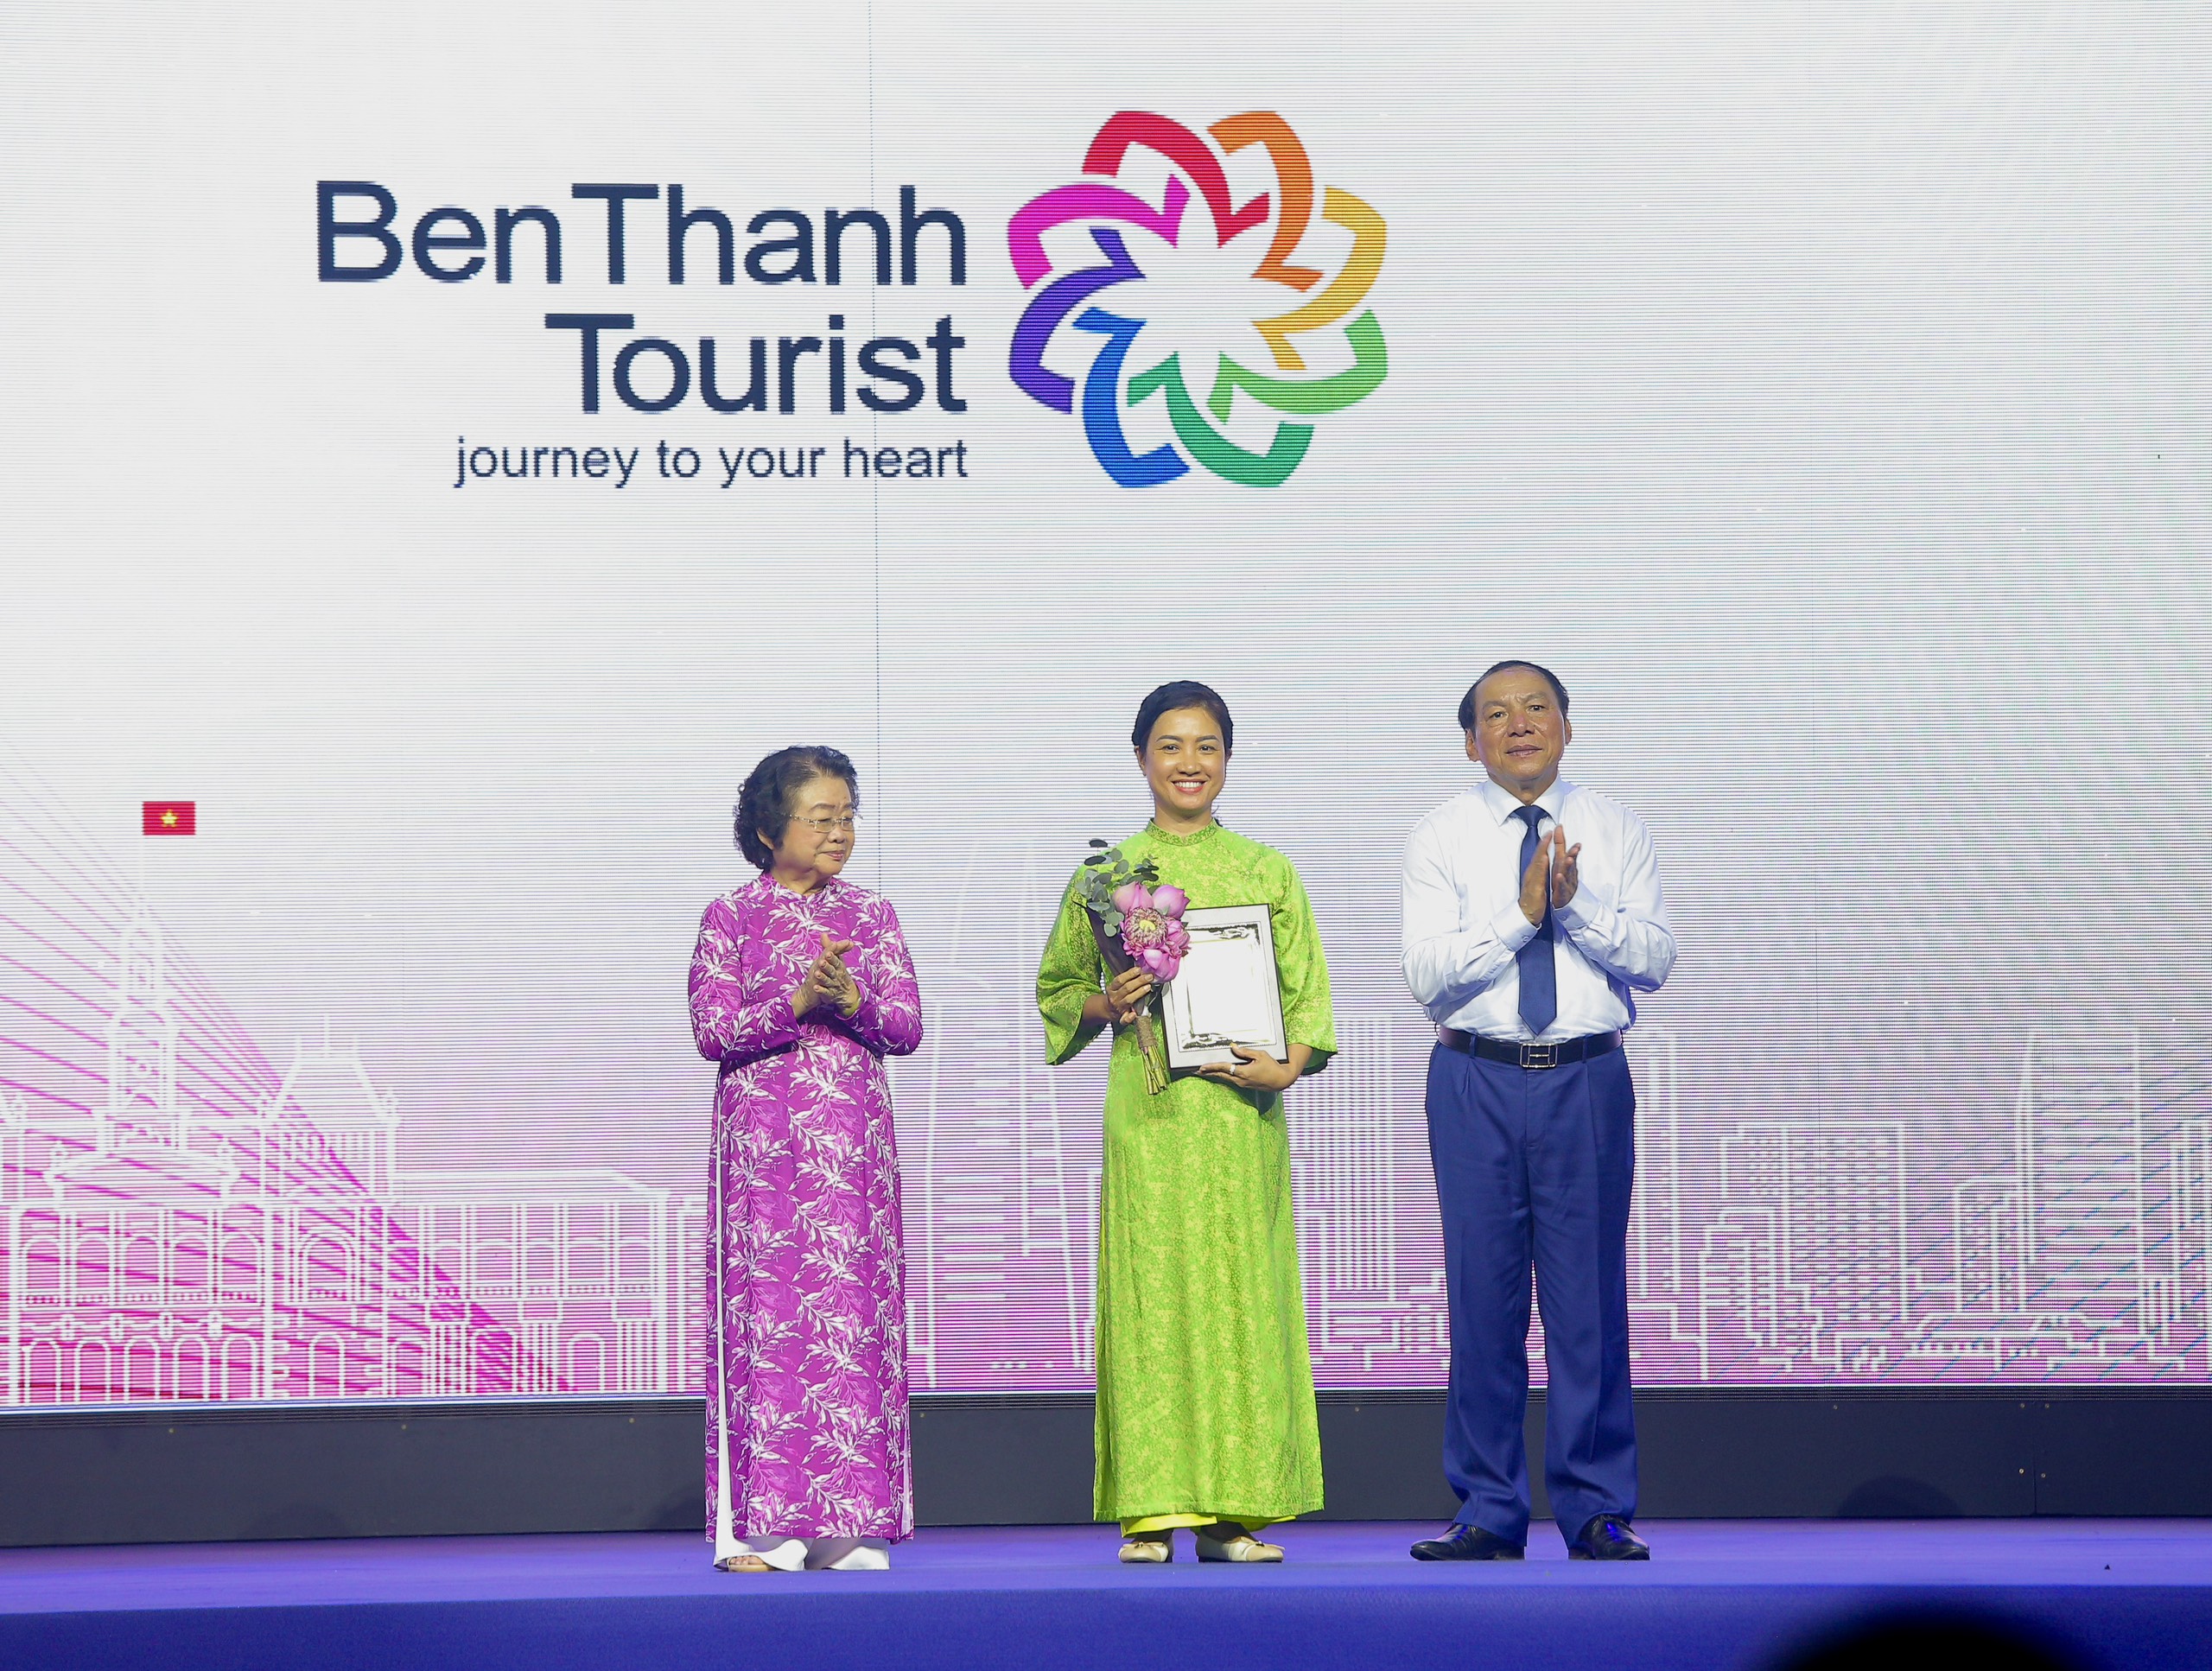 BENTHANH TOURIST ĐẠT GIẢI “DOANH NGHIỆP DU LỊCH HÀNG ĐẦU” CỦA TPHCM.